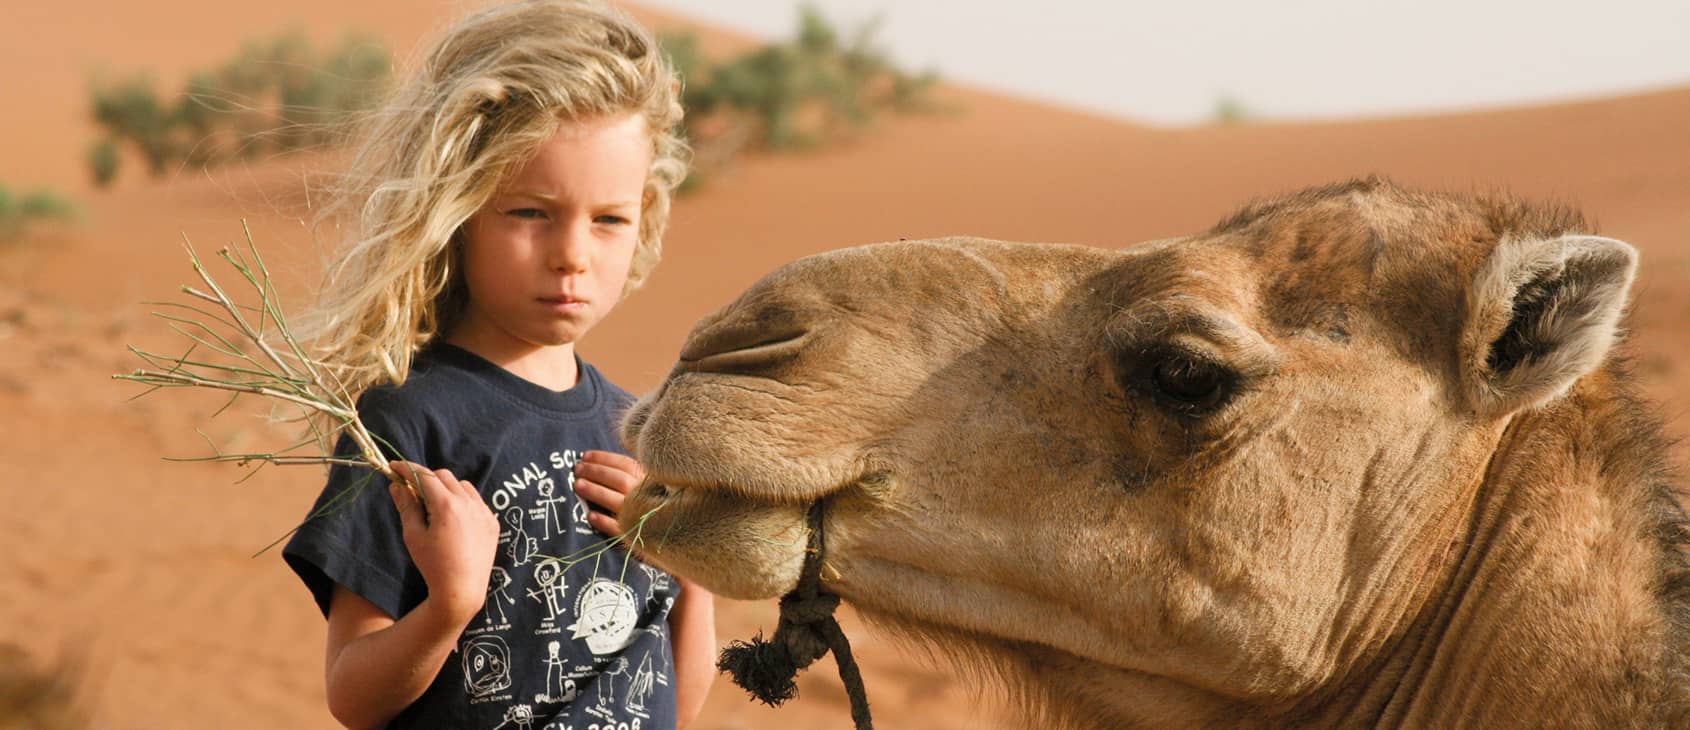 Child feeding camel